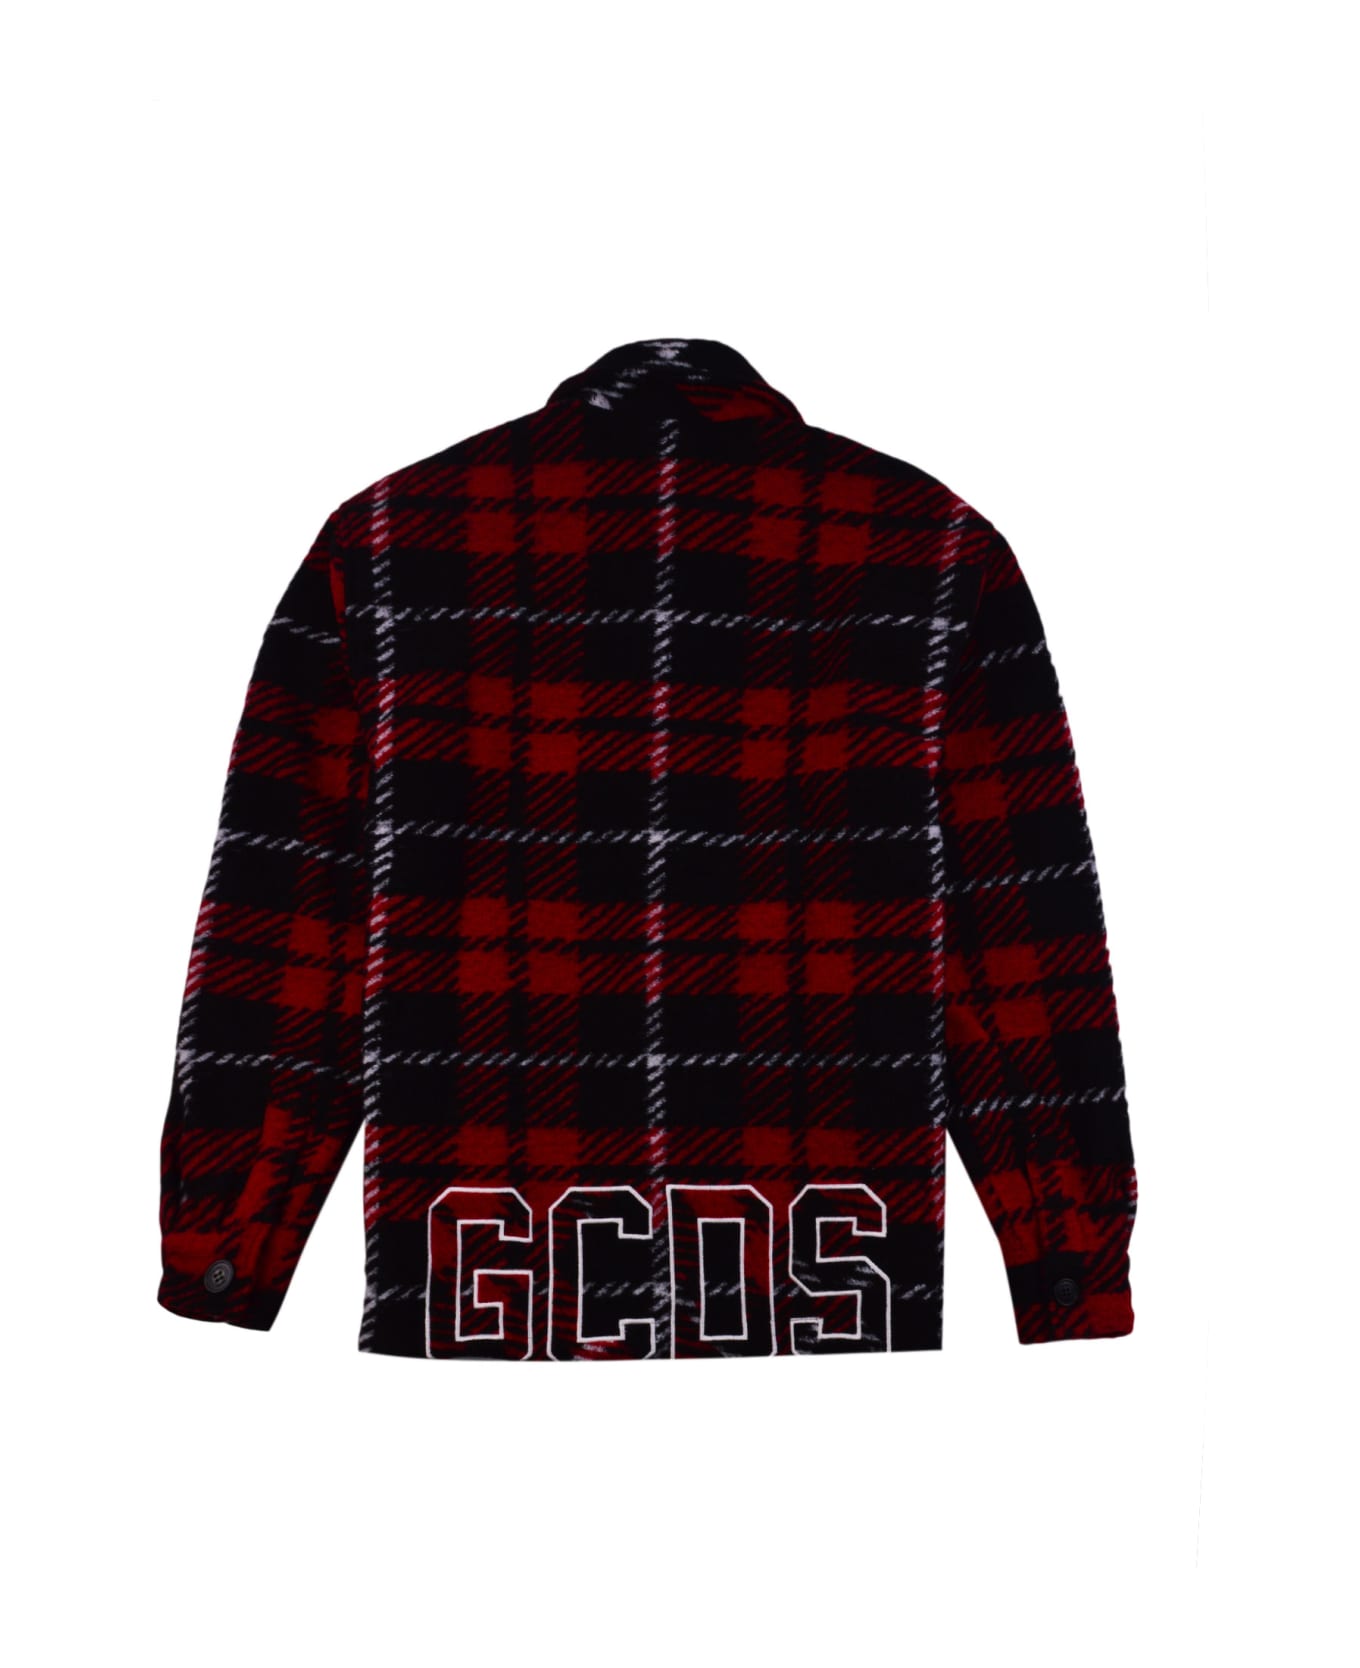 GCDS Shirt - Red